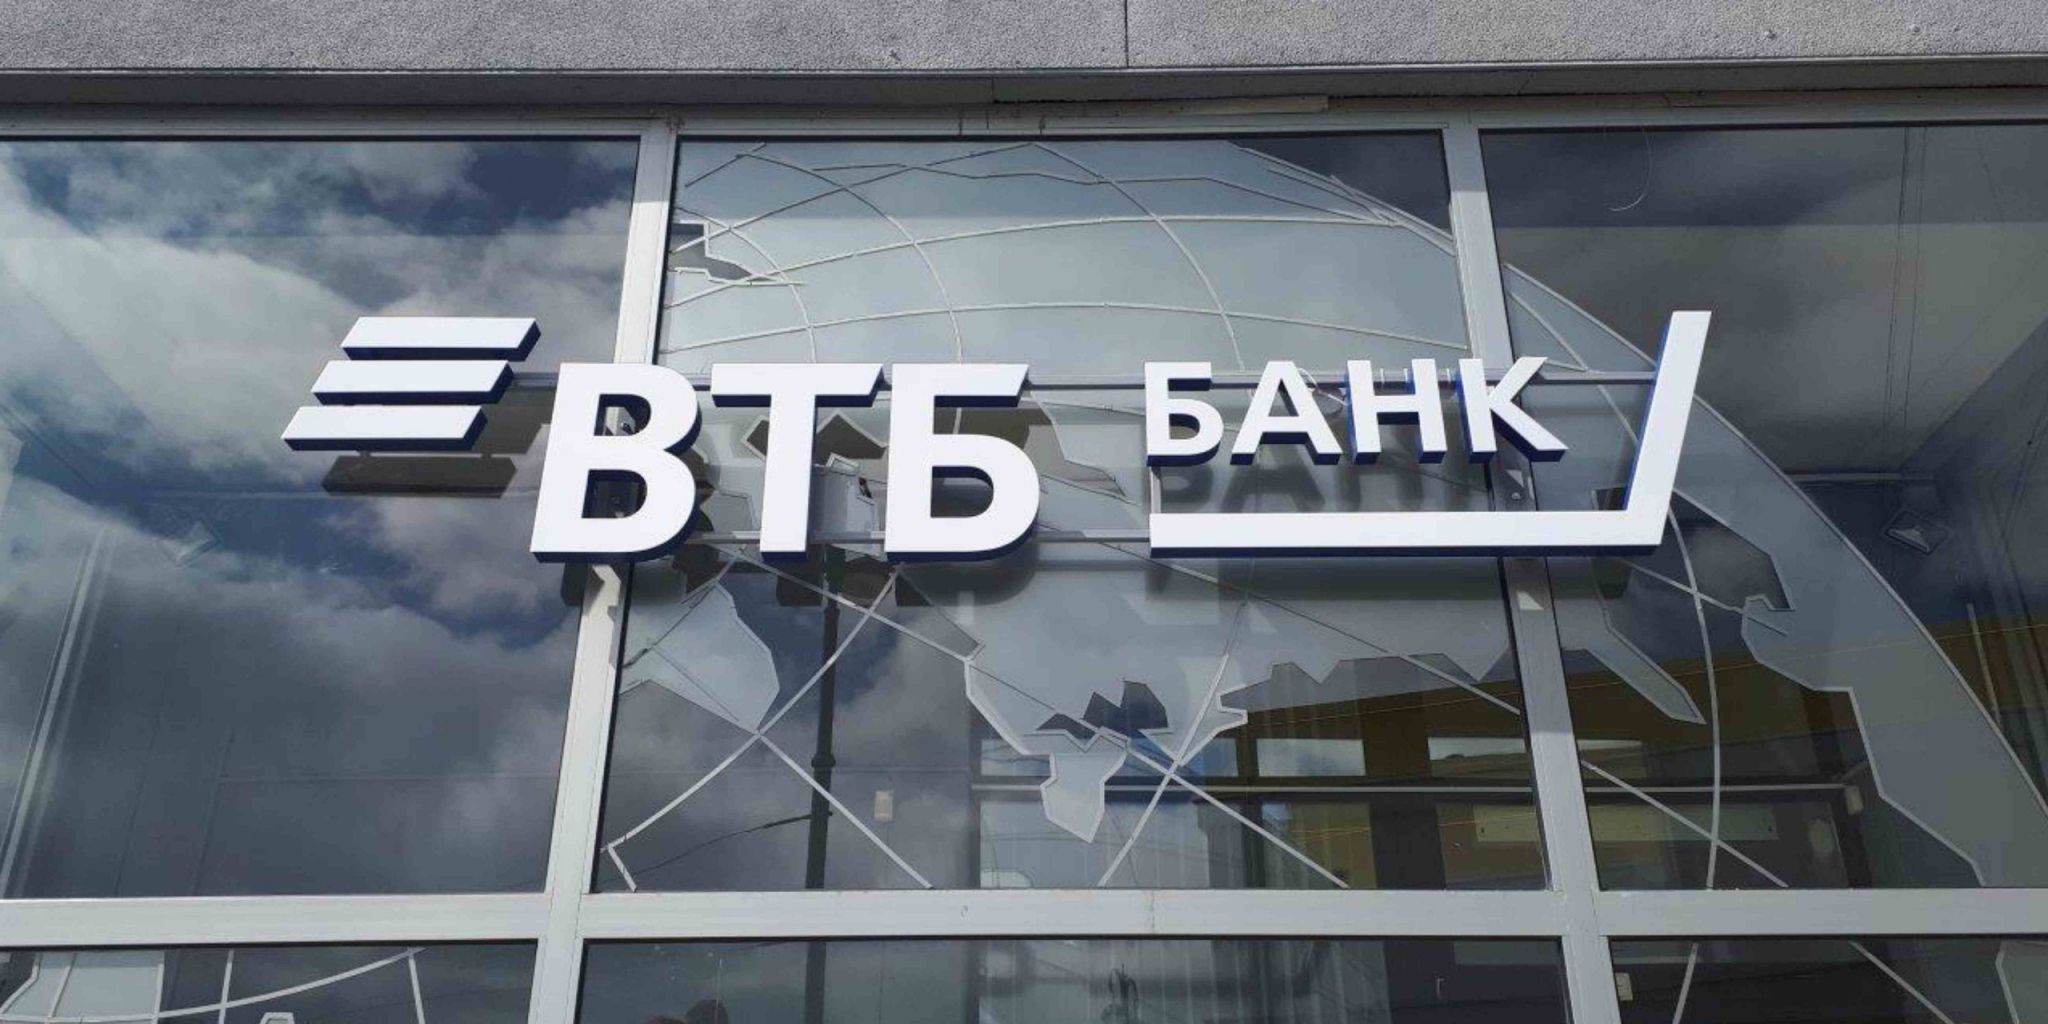 ВТБ: "Выдачи автокредитов в России превысят триллион рублей в этом году"